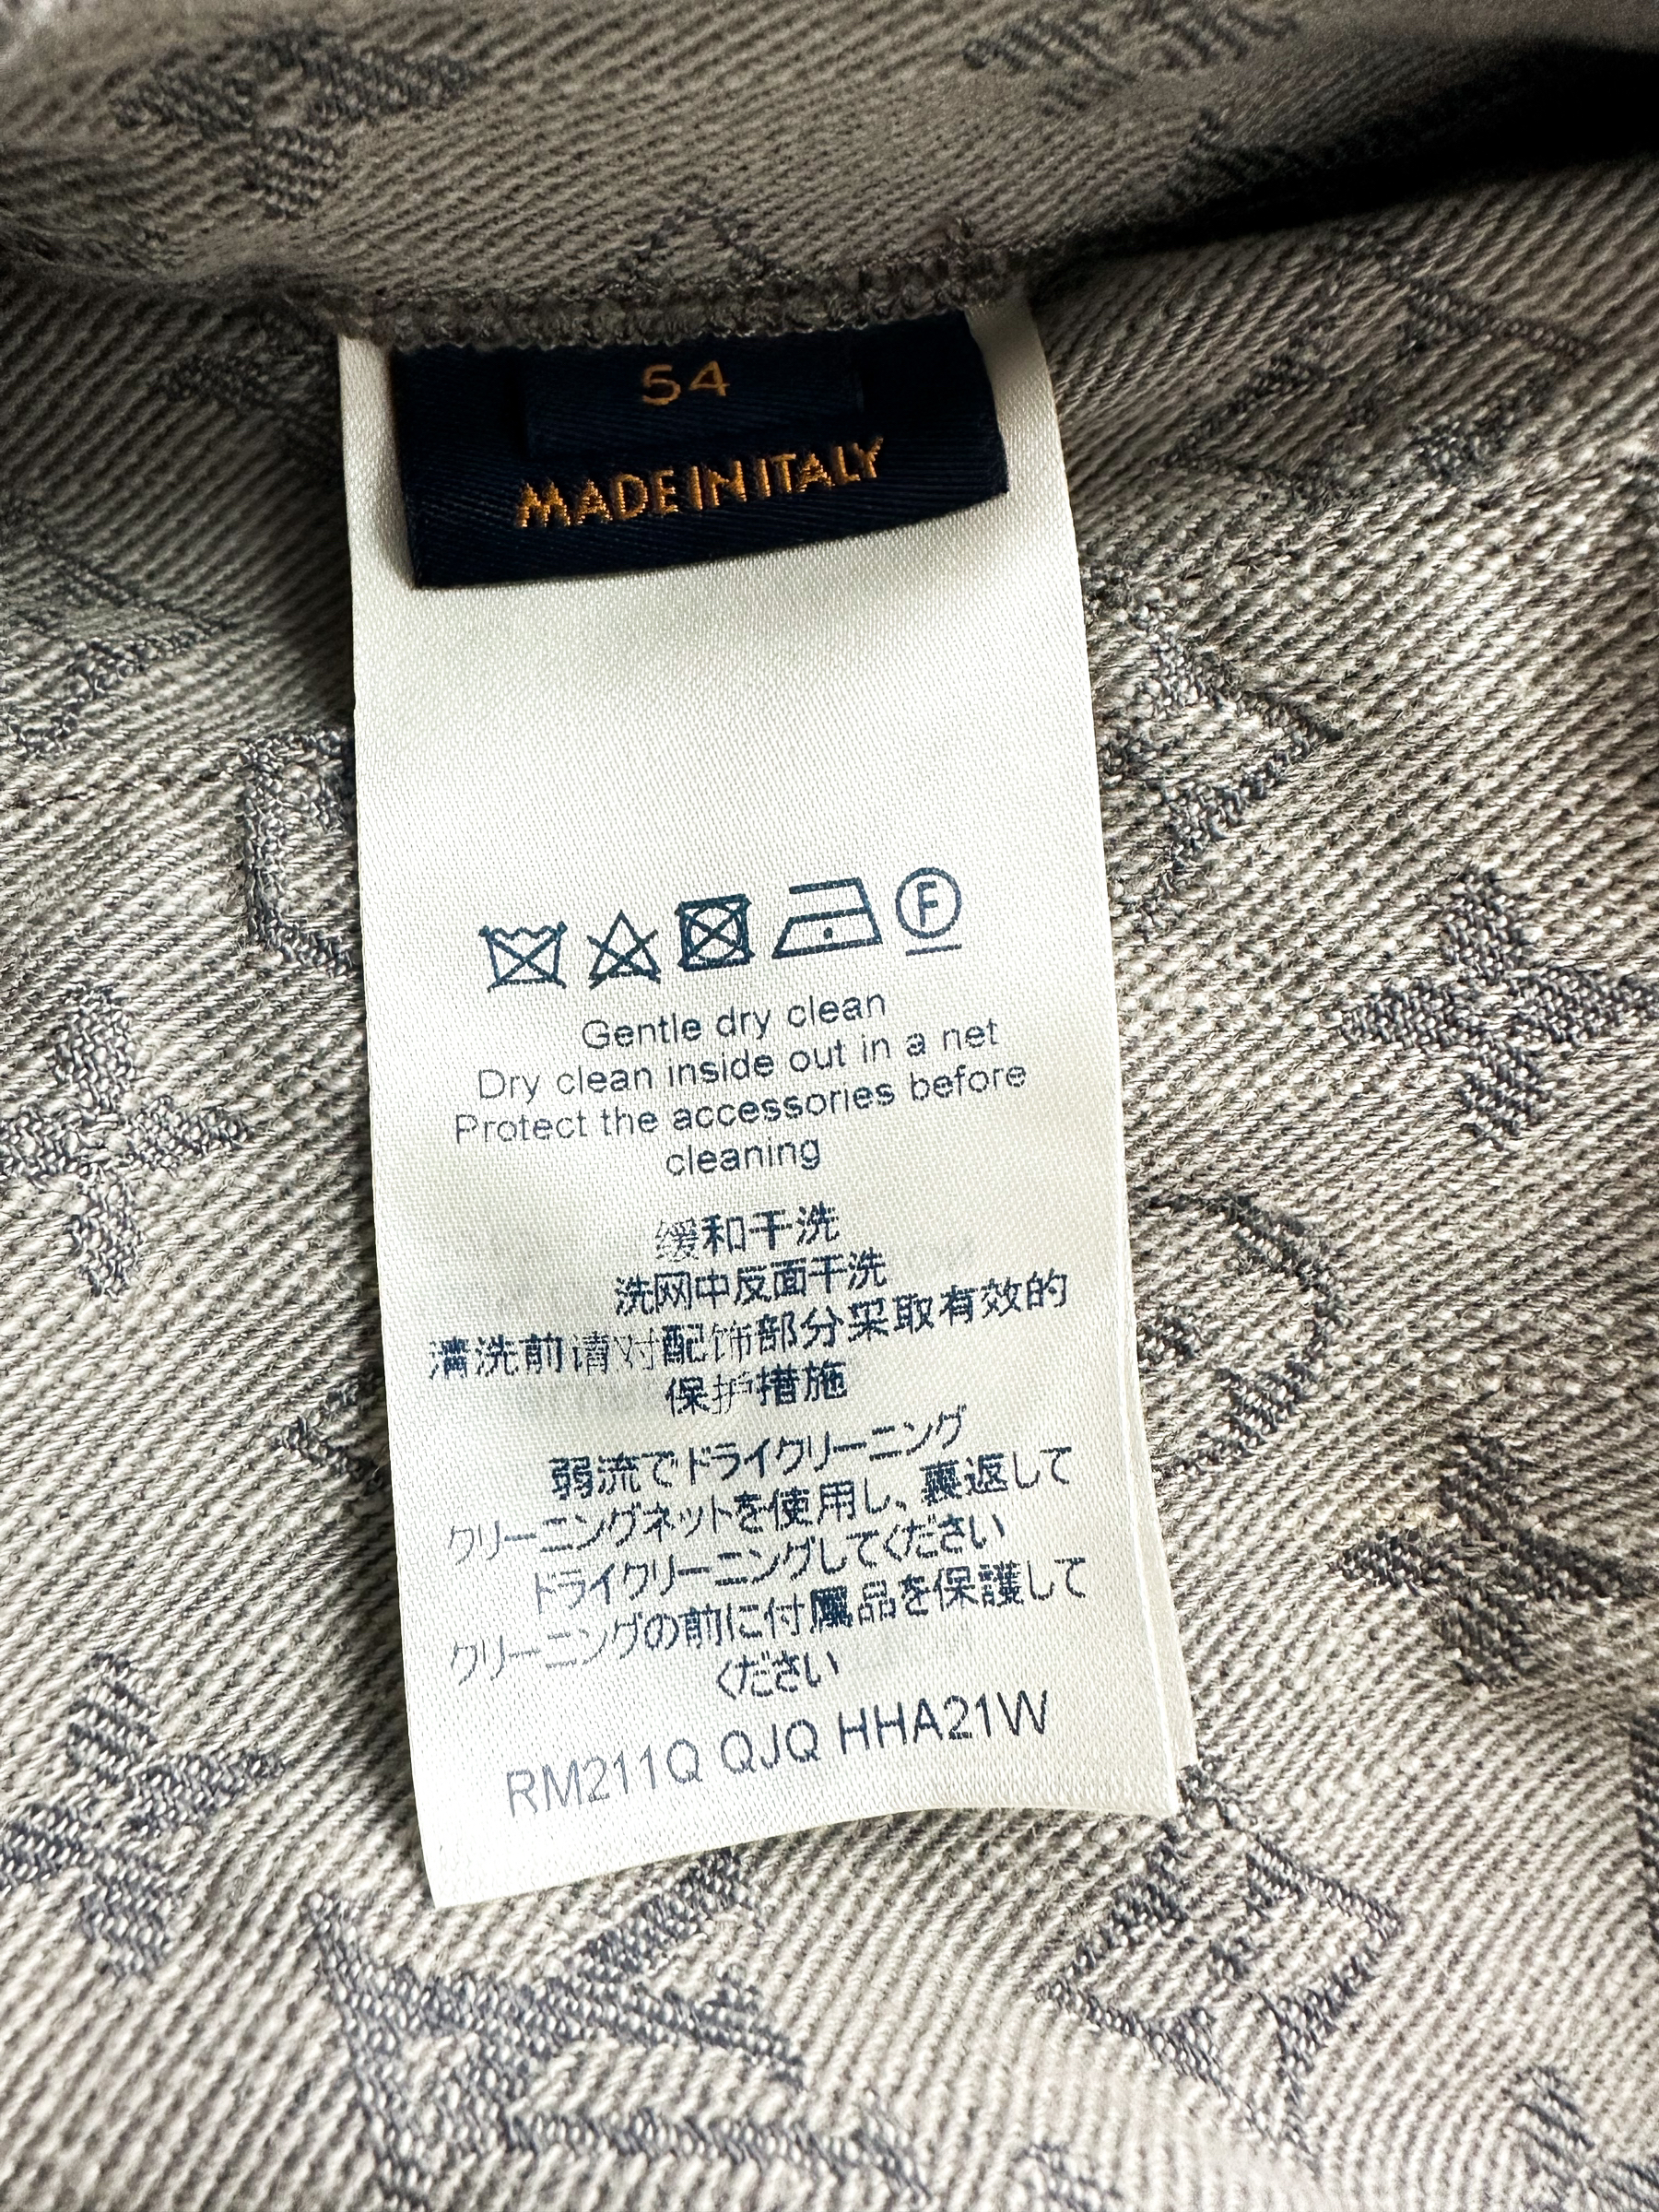 Jacket Louis Vuitton Grey size 50 IT in Denim - Jeans - 23678440